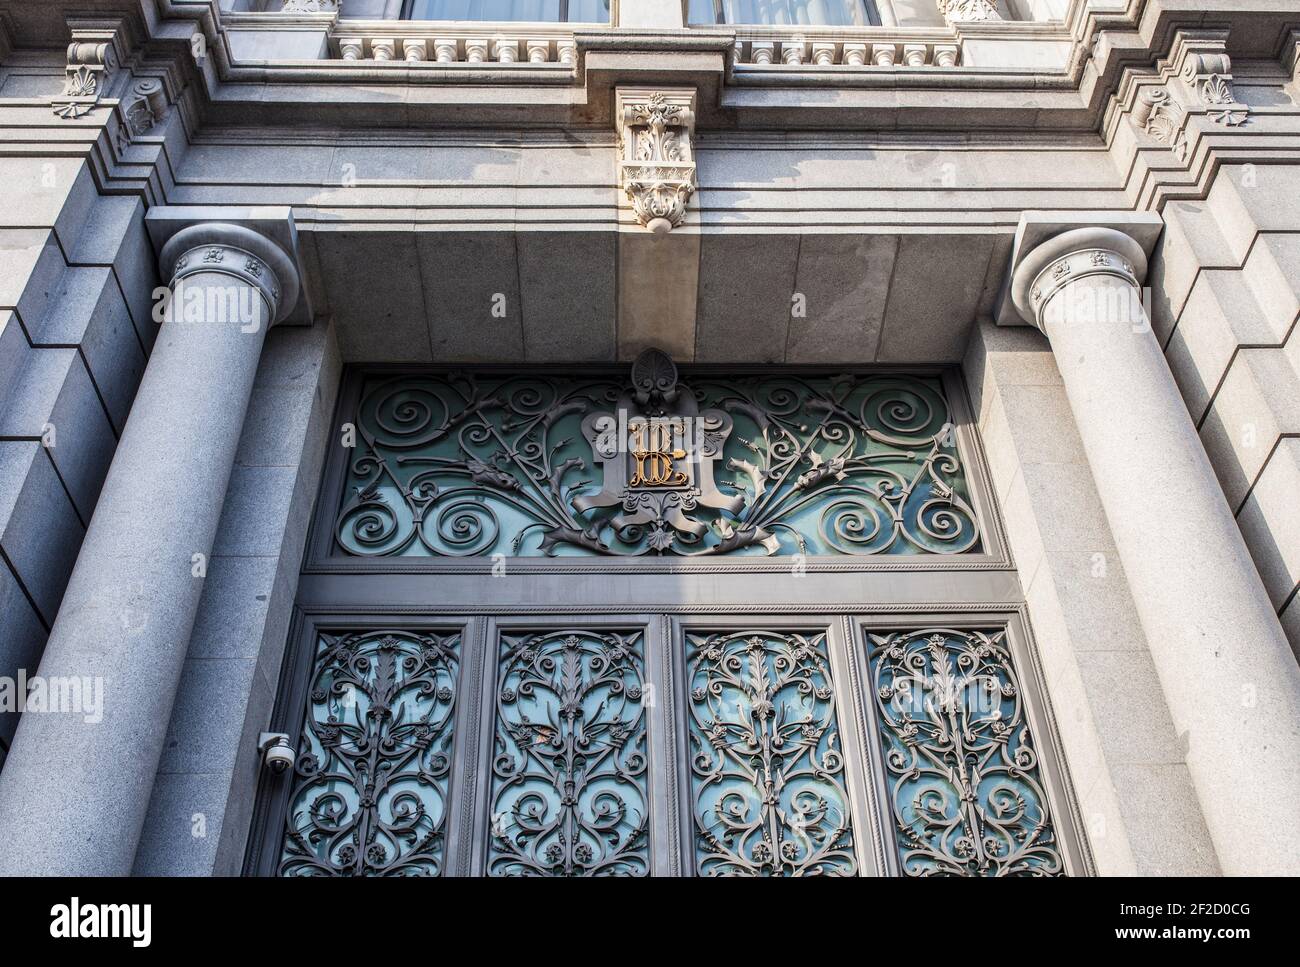 Sede principale della Banca di Spagna. Uno dei più bei esempi di architettura spagnola del XIX secolo, Madrid, Spagna Foto Stock